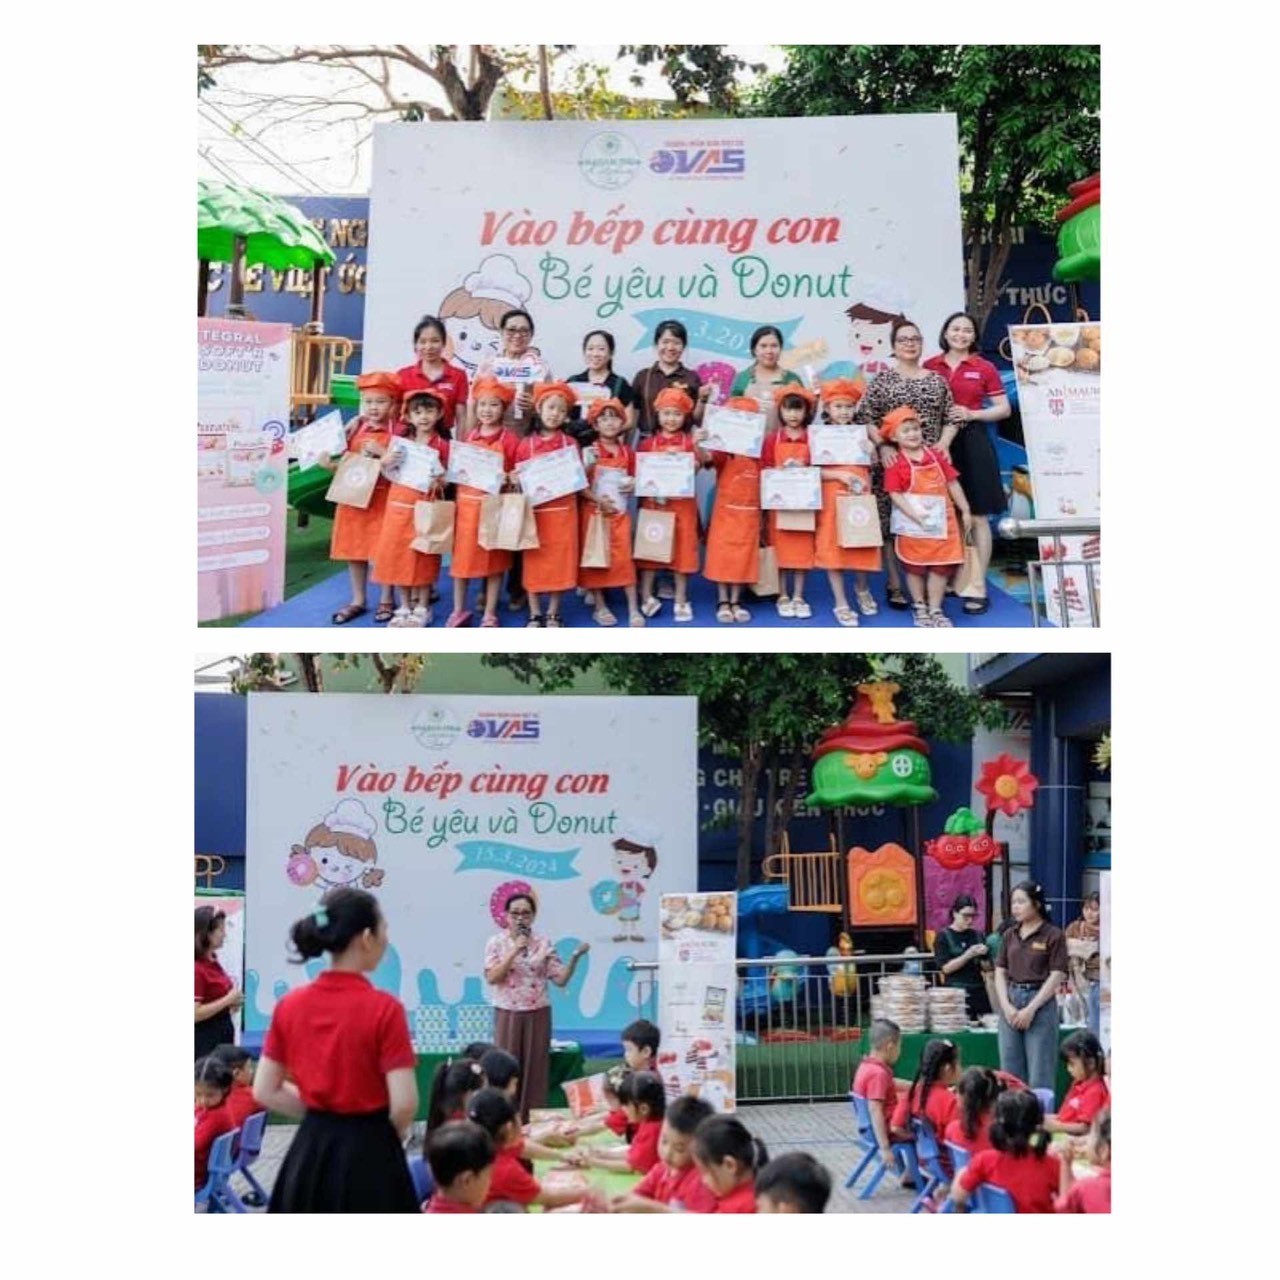 Trường mầm non Việt Úc Cần Thơ - Nơi khơi nguồn của những ý tưởng sáng tạo dành cho các bé - ảnh 6